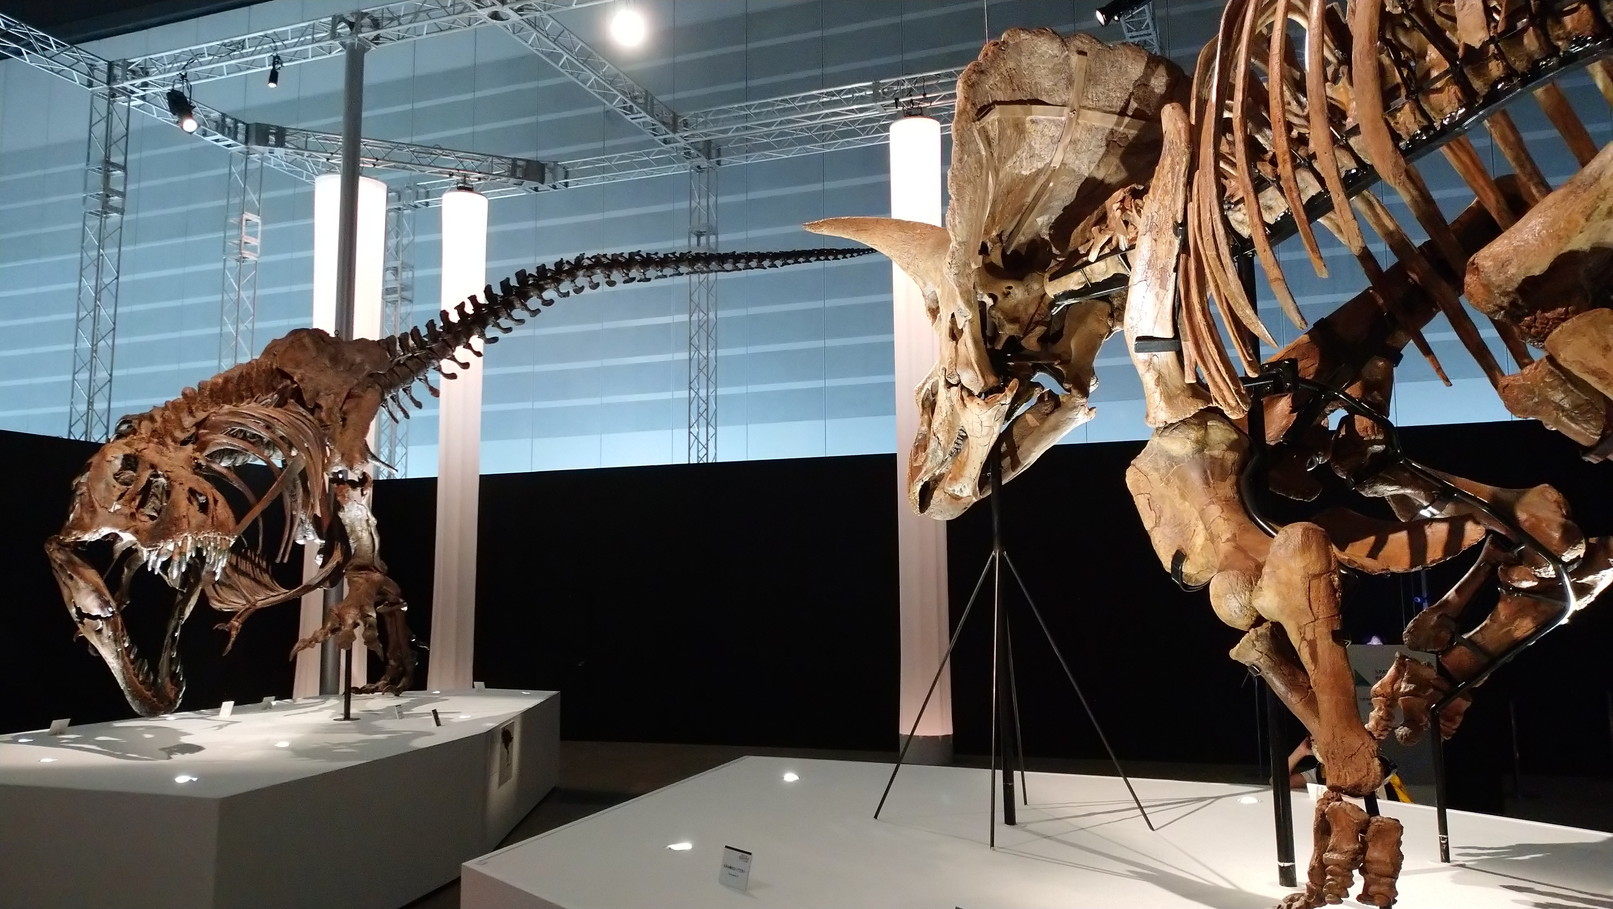 トリケラトプス「レイン」のほぼ完全な全身骨格化石をDinoScience 恐竜科学博 ～ララミディア大陸の恐竜物語～@パシフィコ横浜でみた！_c0002171_00404516.jpg